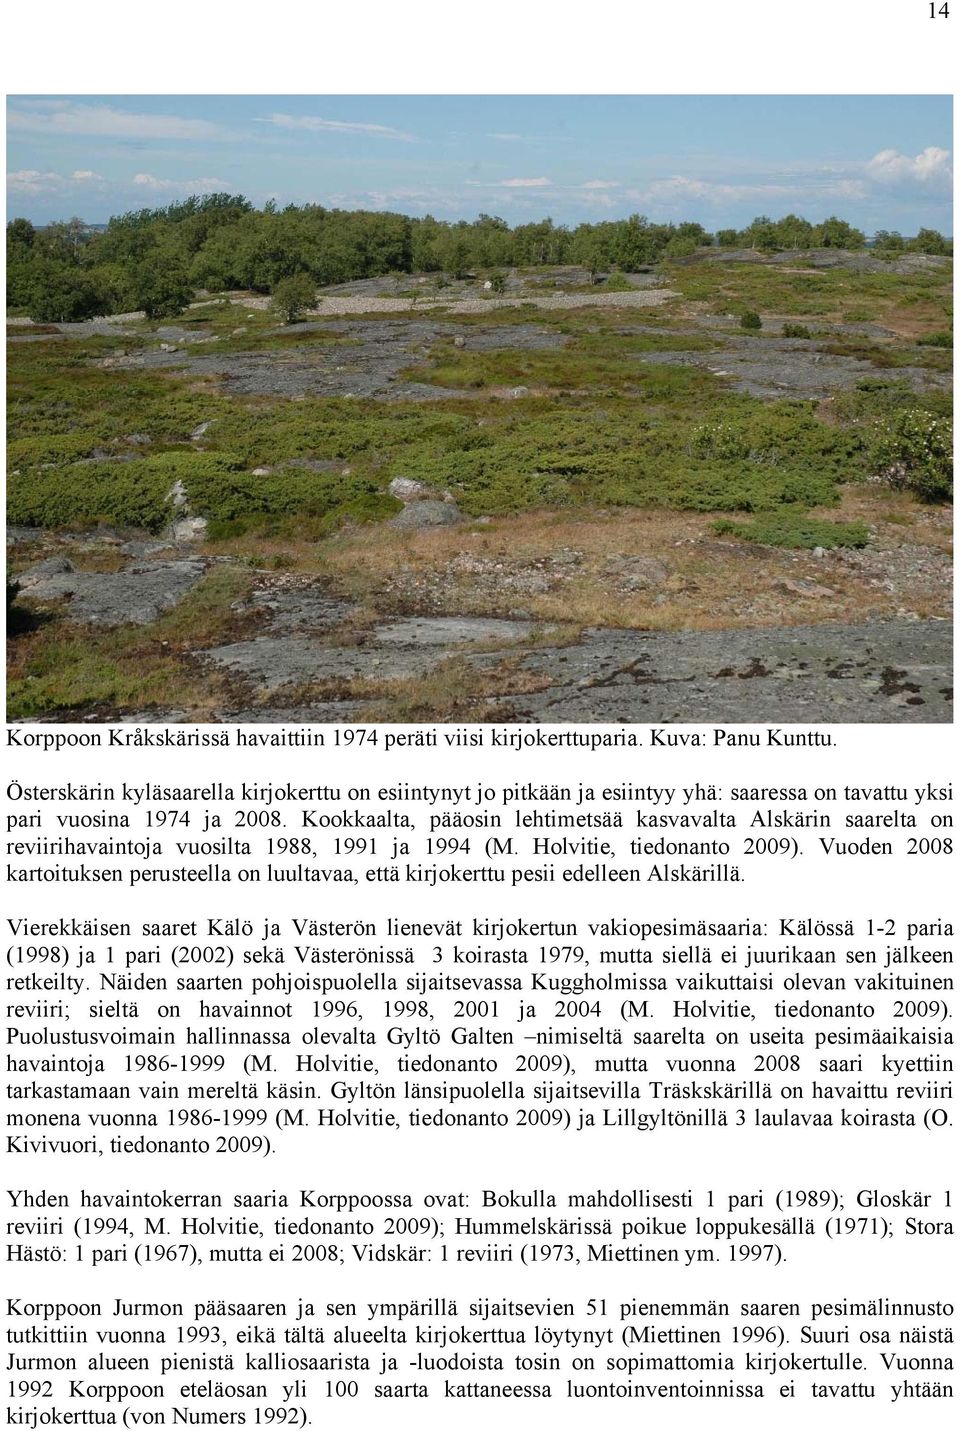 Kookkaalta, pääosin lehtimetsää kasvavalta Alskärin saarelta on reviirihavaintoja vuosilta 1988, 1991 ja 1994 (M. Holvitie, tiedonanto 2009).